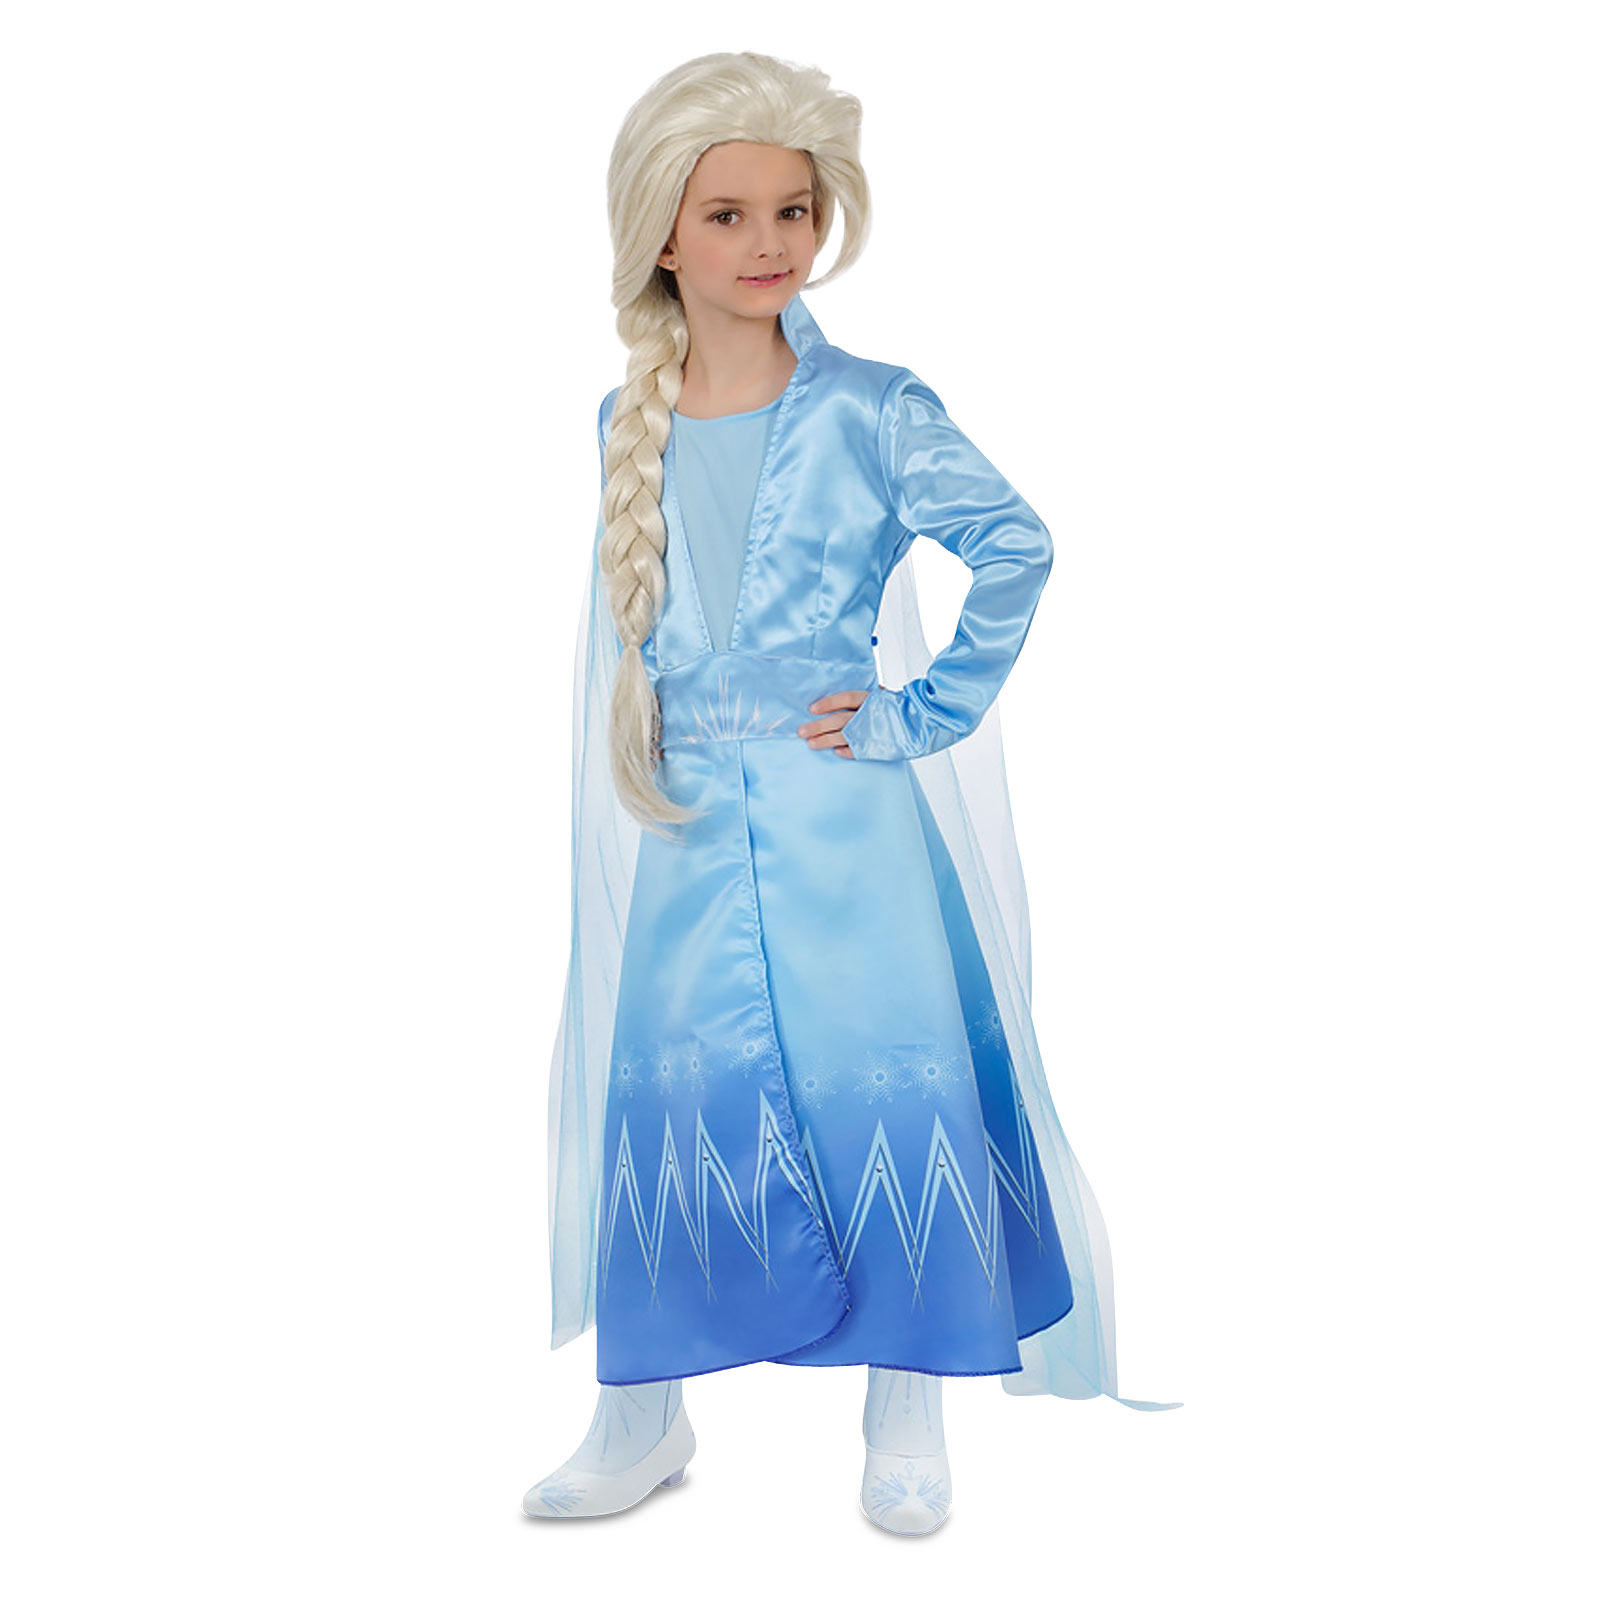 Elsa Ice Queen Children's Costume Dress for Frozen Fans